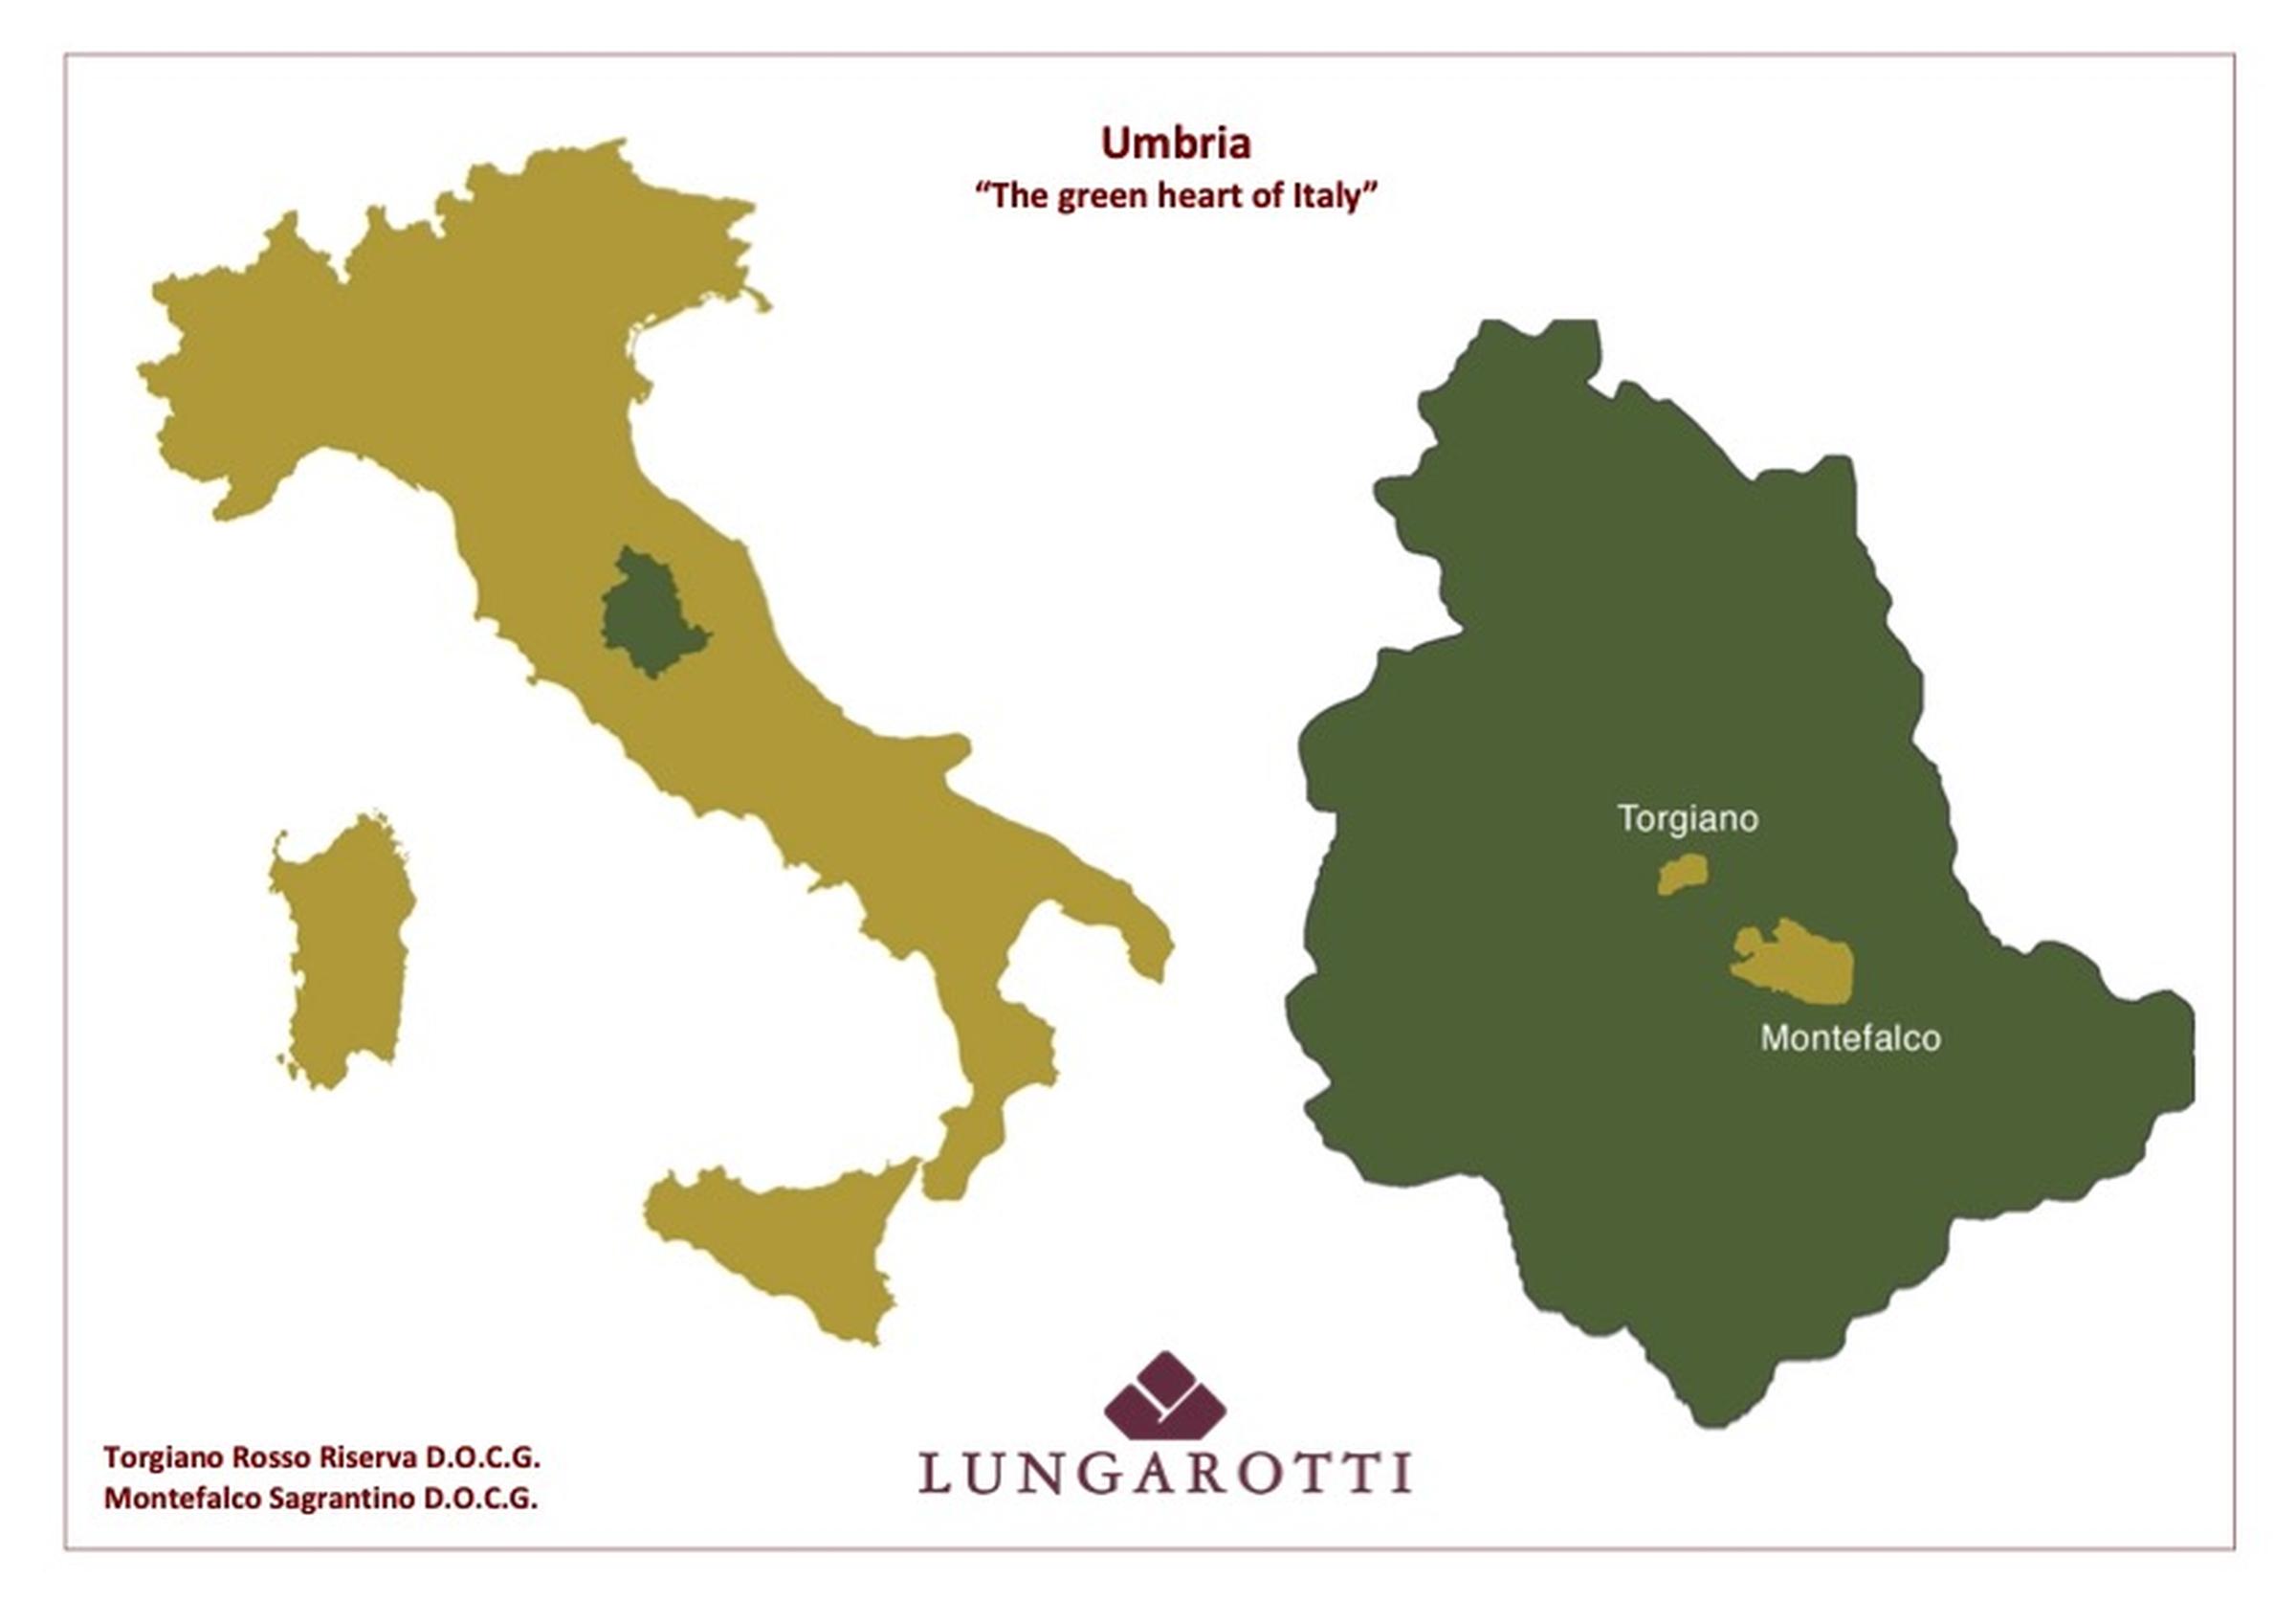 https://a.storyblok.com/f/105614/842x595/f328c6d546/lungarotti-mappa-italia-umbria.jpg